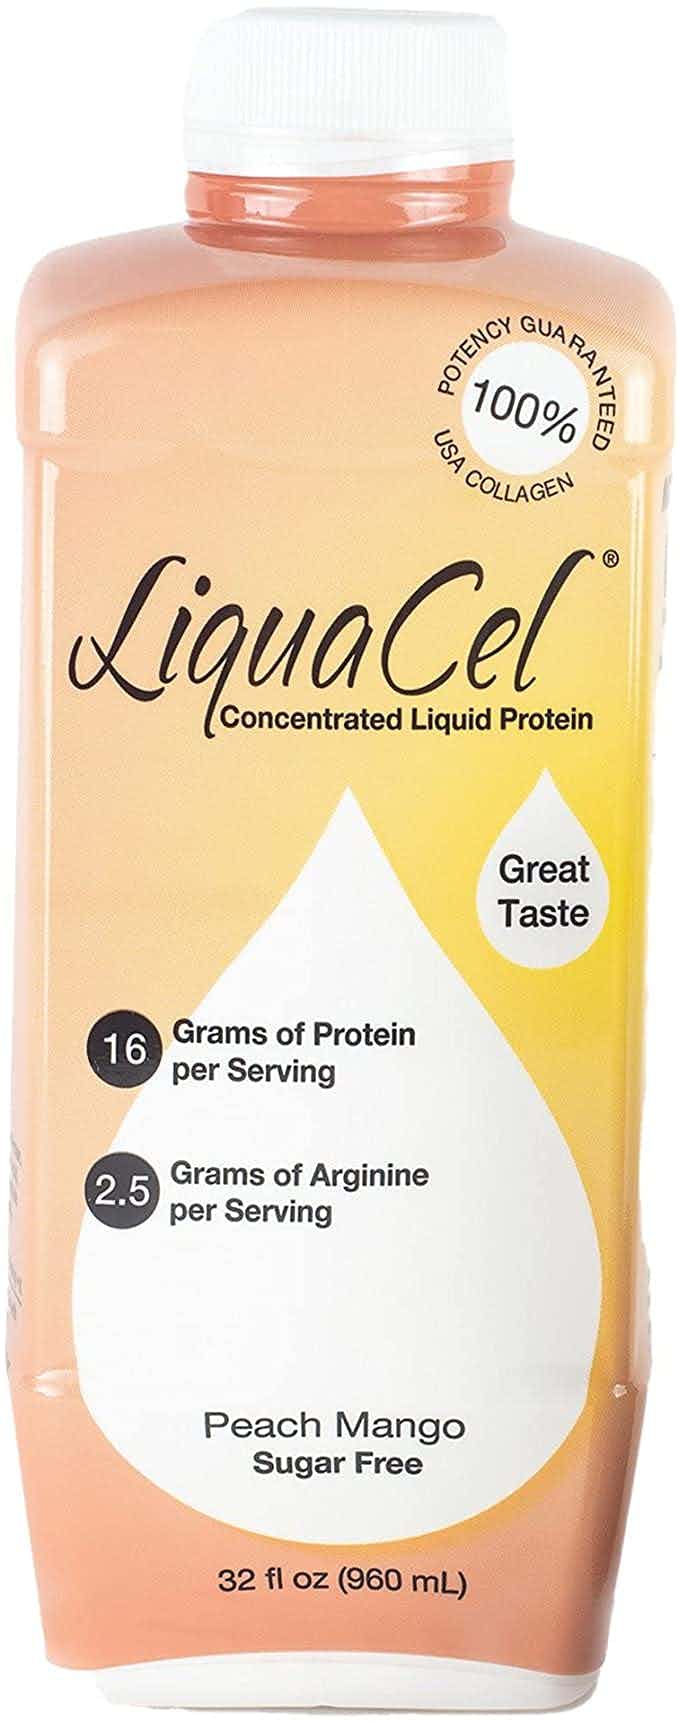 LiquaCel Ready-to-Use Liquid Protein, Peach Mango, 32 oz., GH87, 1 Each